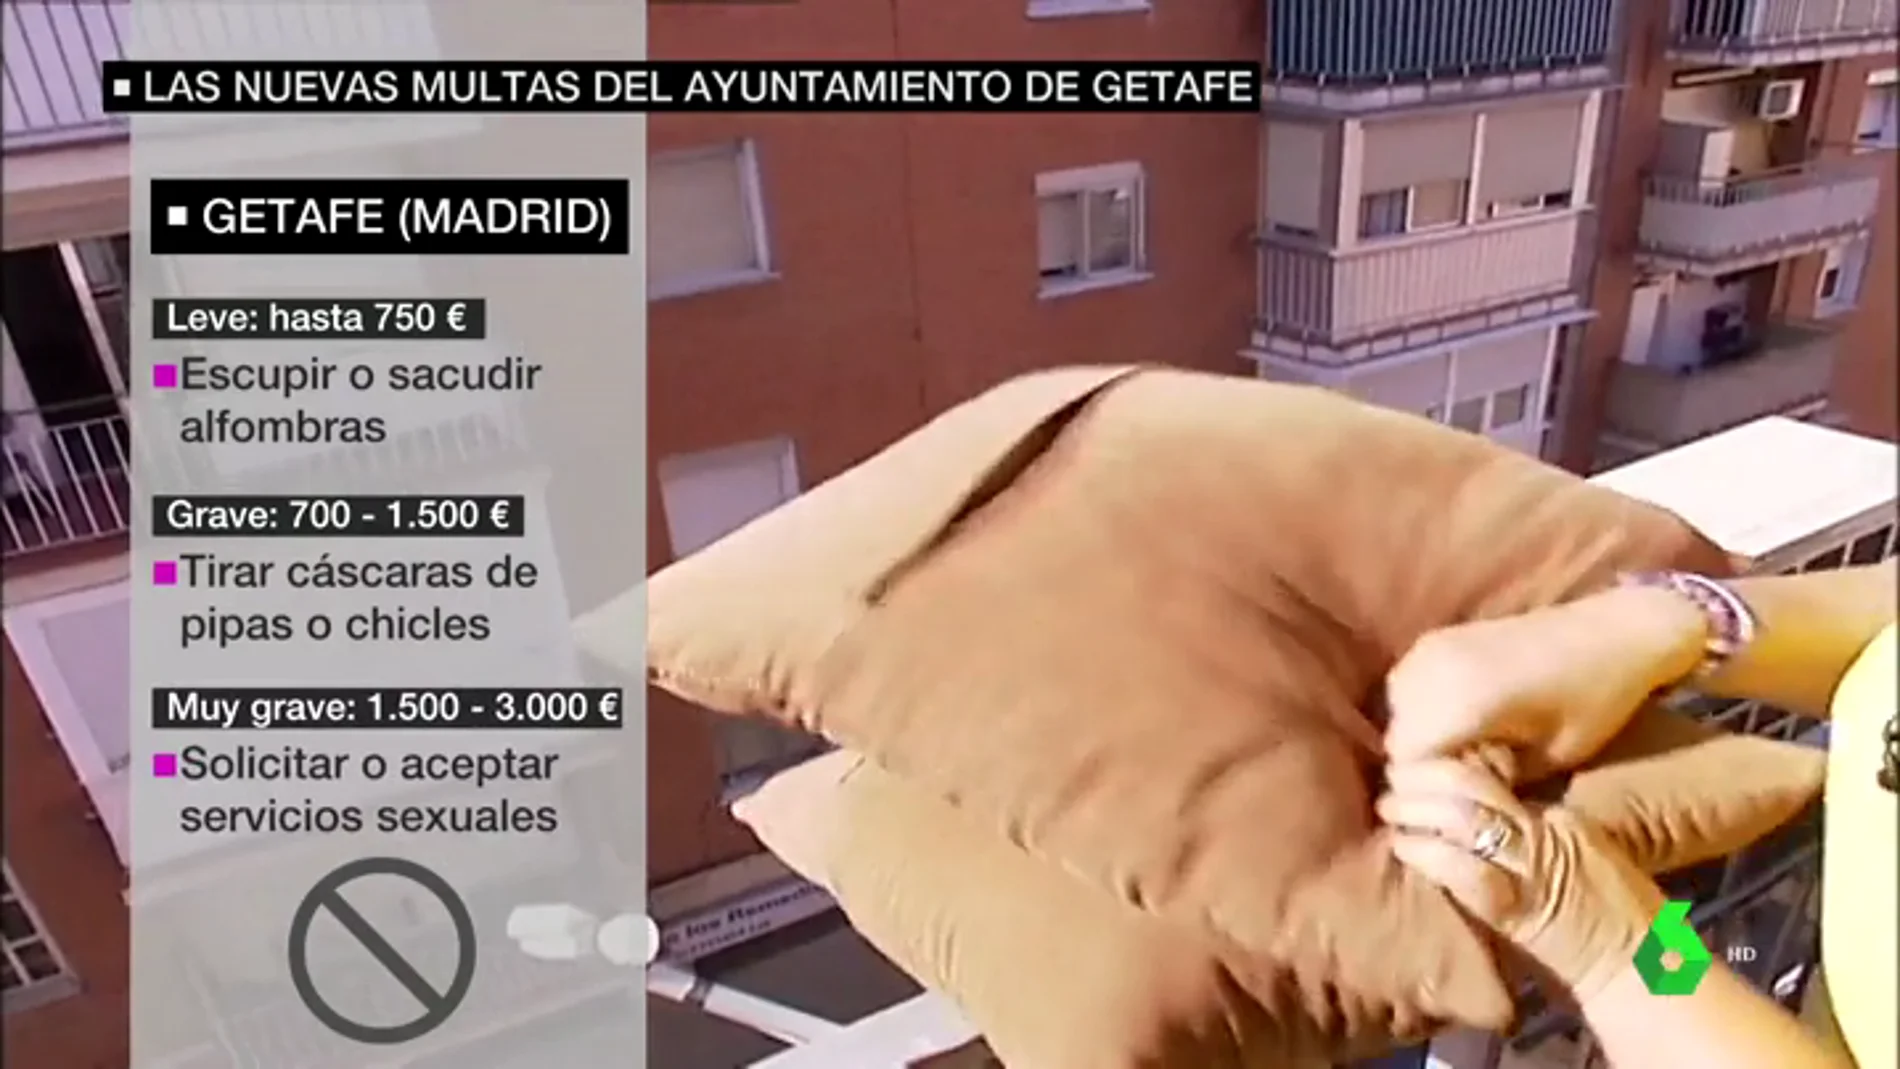 Getafe aprueba multas de más de 700 euros por sacudir un mantel por la ventana